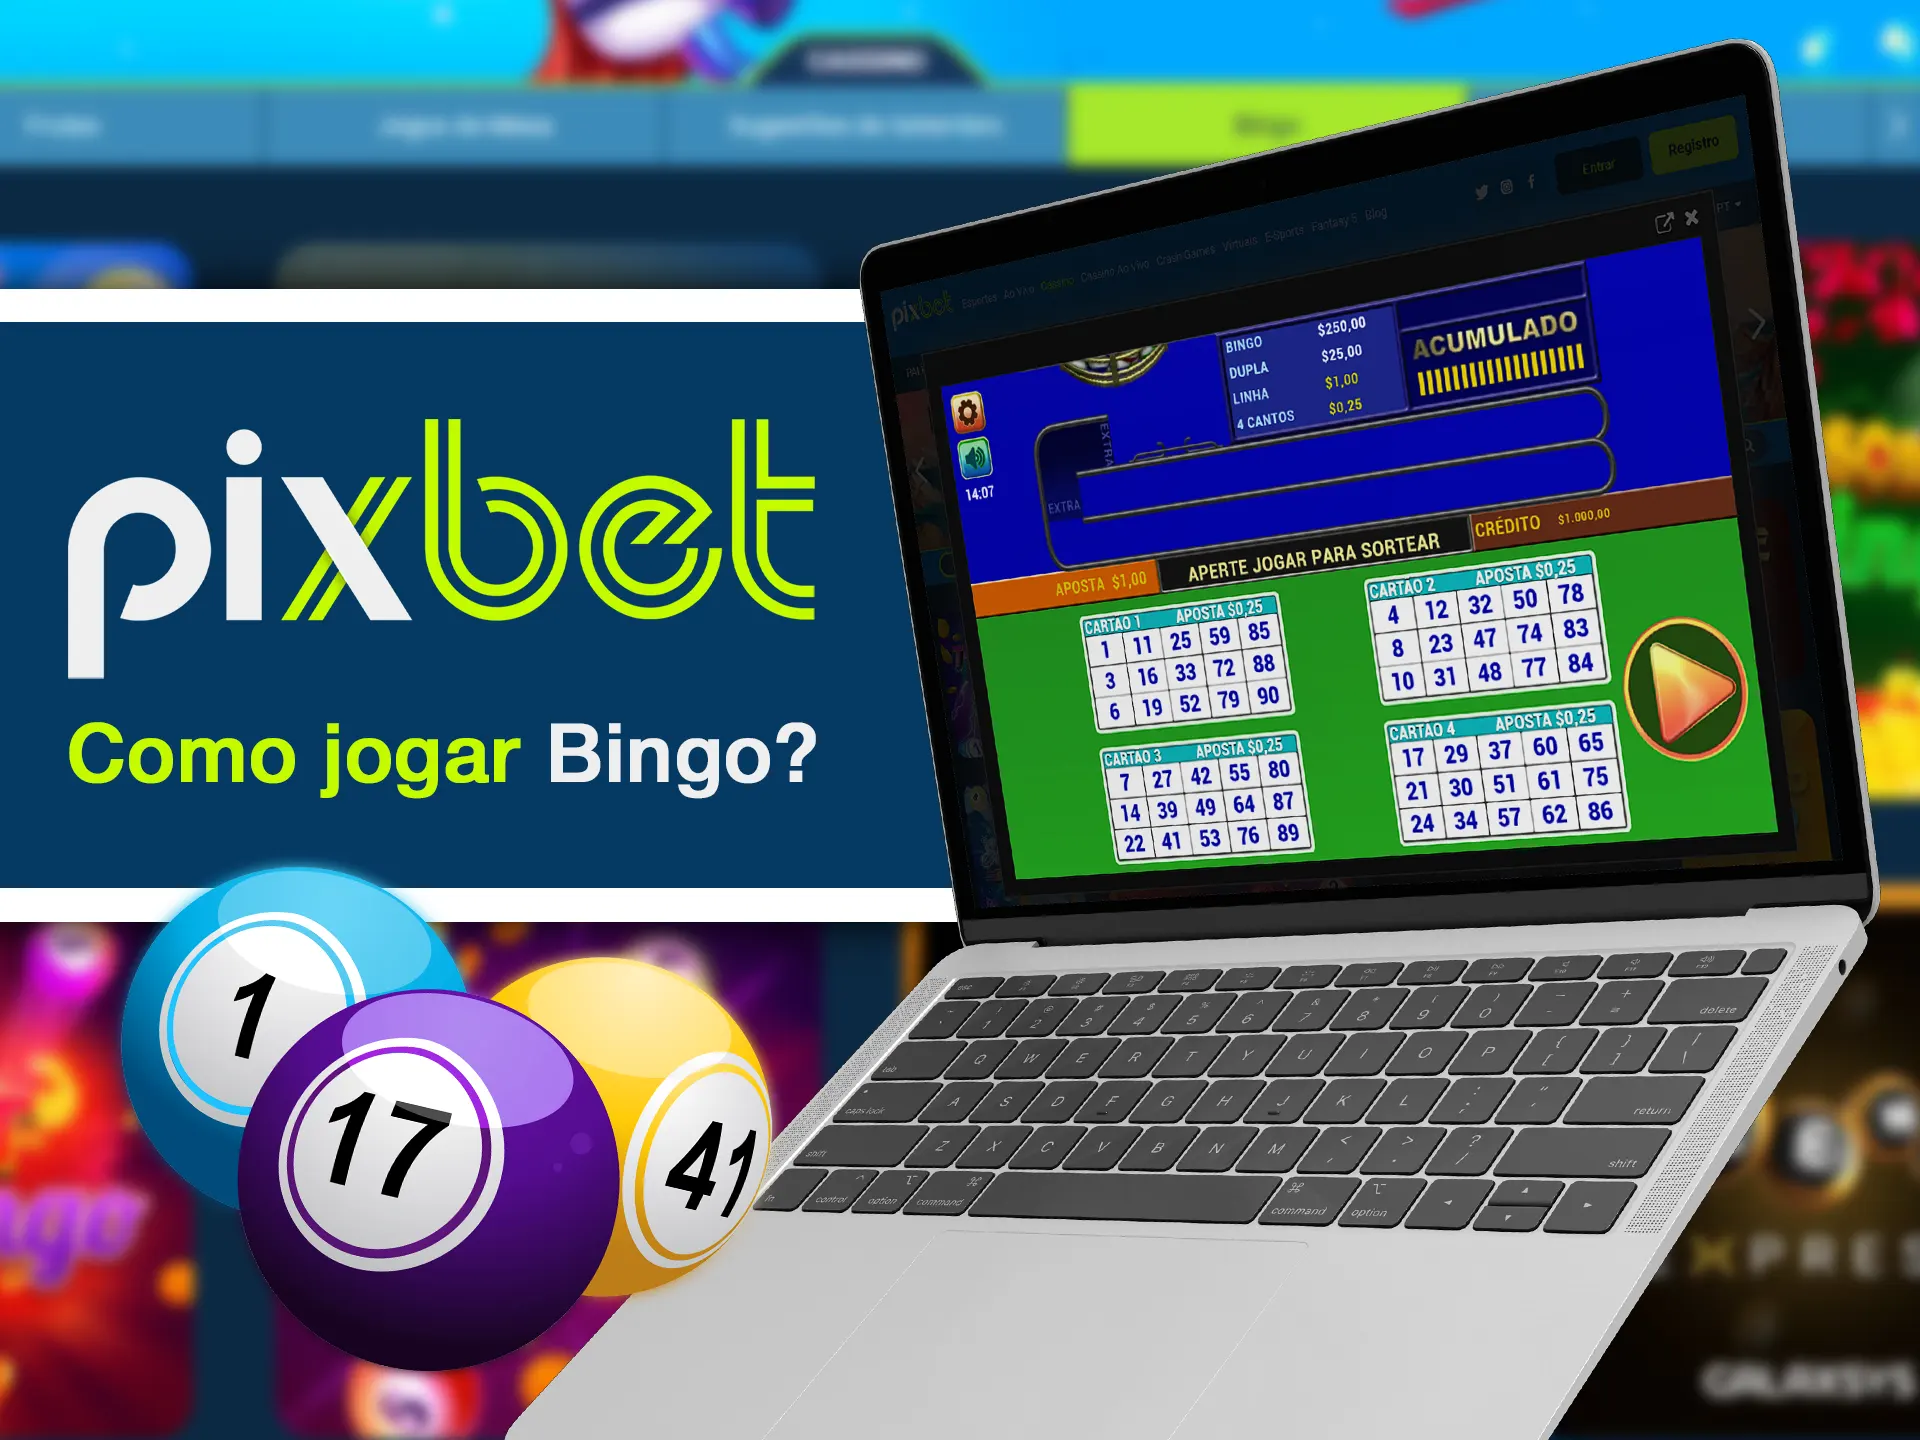 Aprenda a jogar bingo na página de bingo do Pixbet.